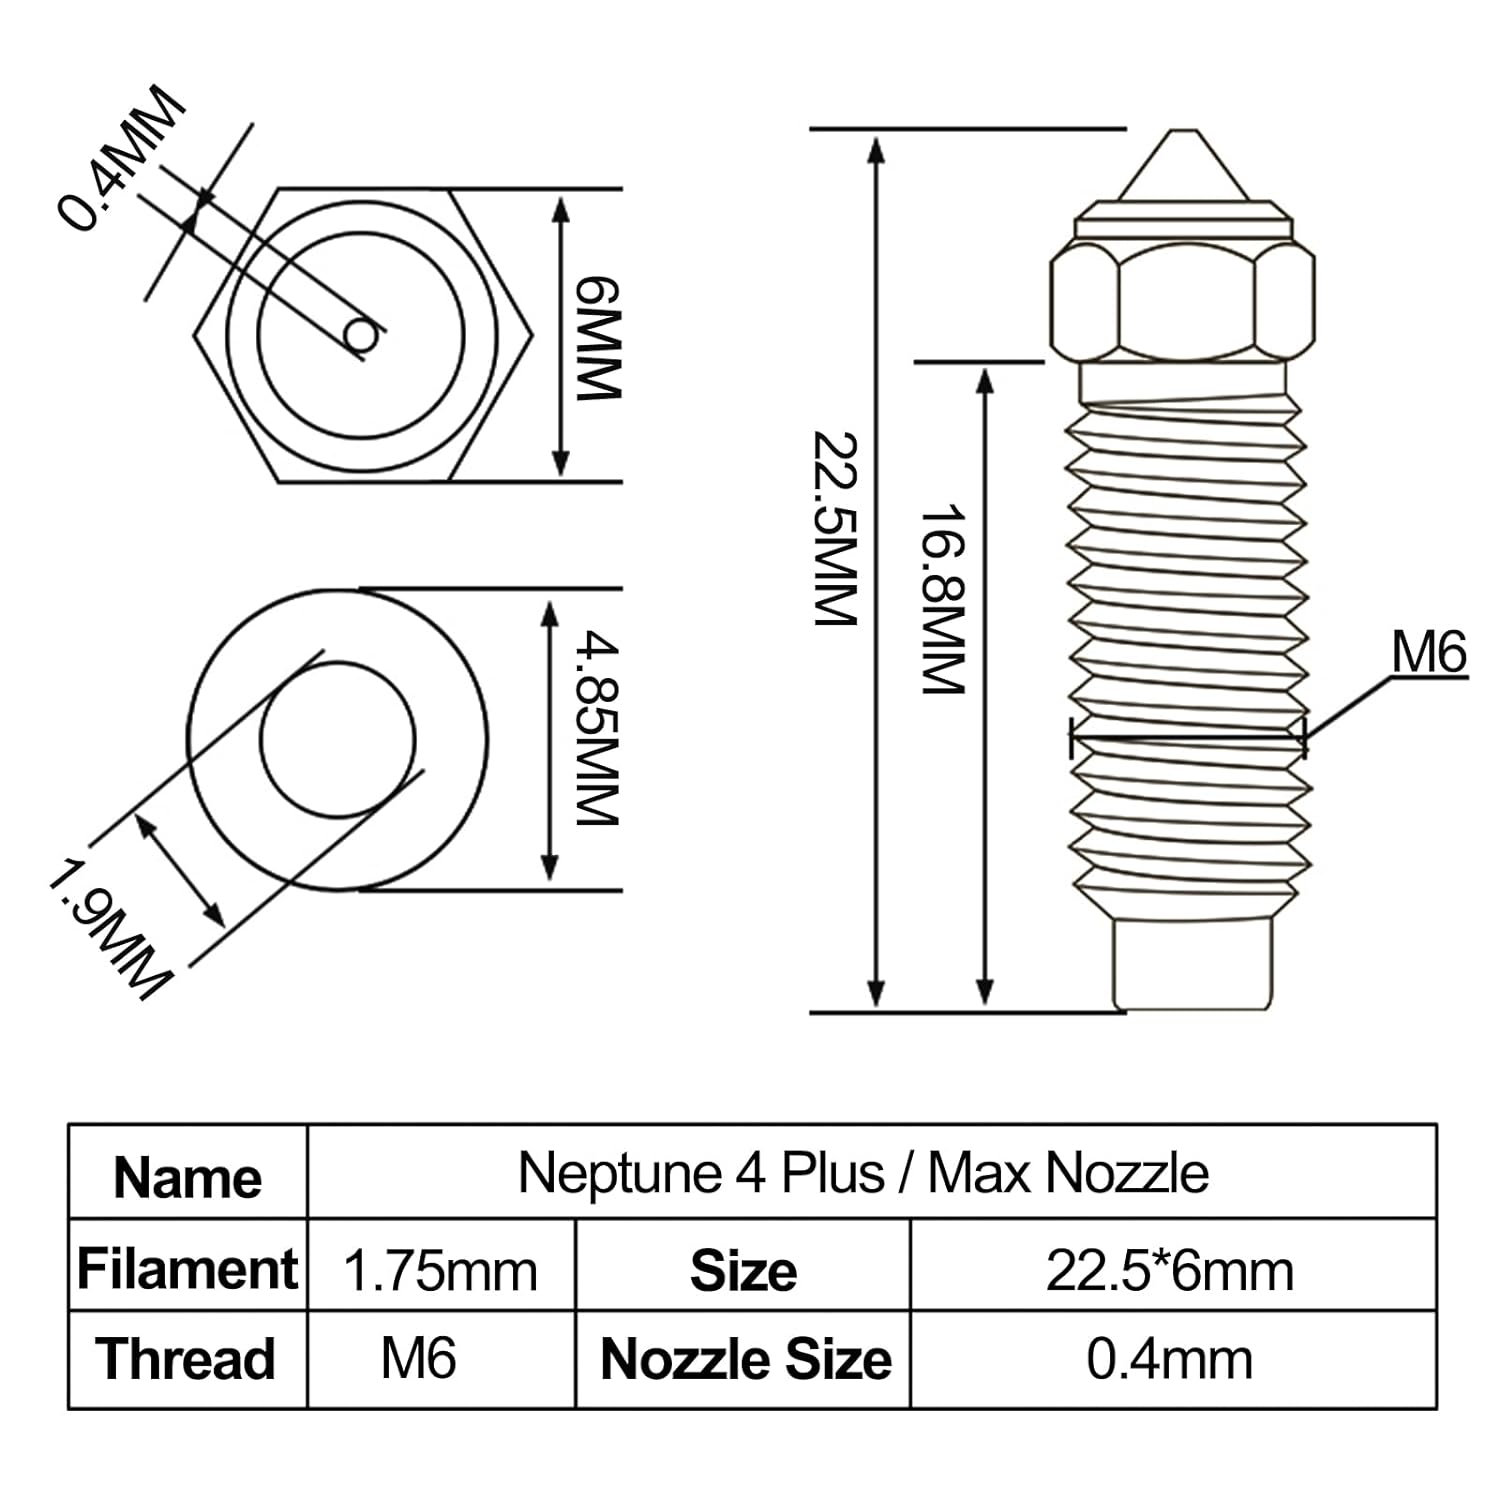 Nozzles for Neptune 4 Max